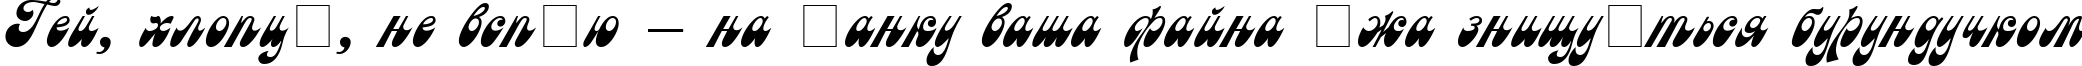 Пример написания шрифтом Astron Cyrillic текста на украинском